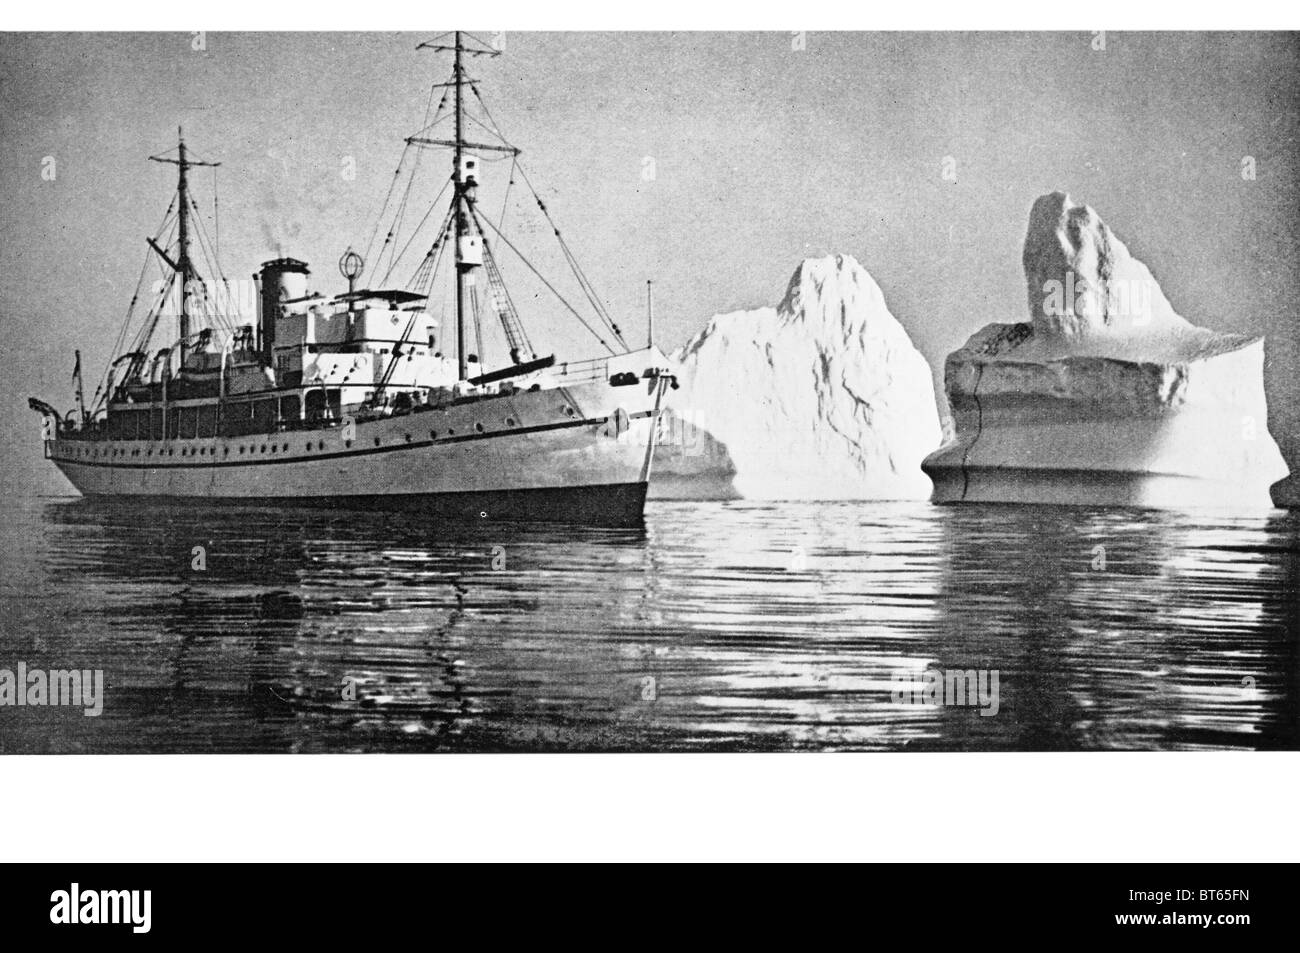 R r s nave challenger Labrador costa esploratore polare antartico artico piroscafo a vapore in acciaio nave scafo in ferro Foto Stock